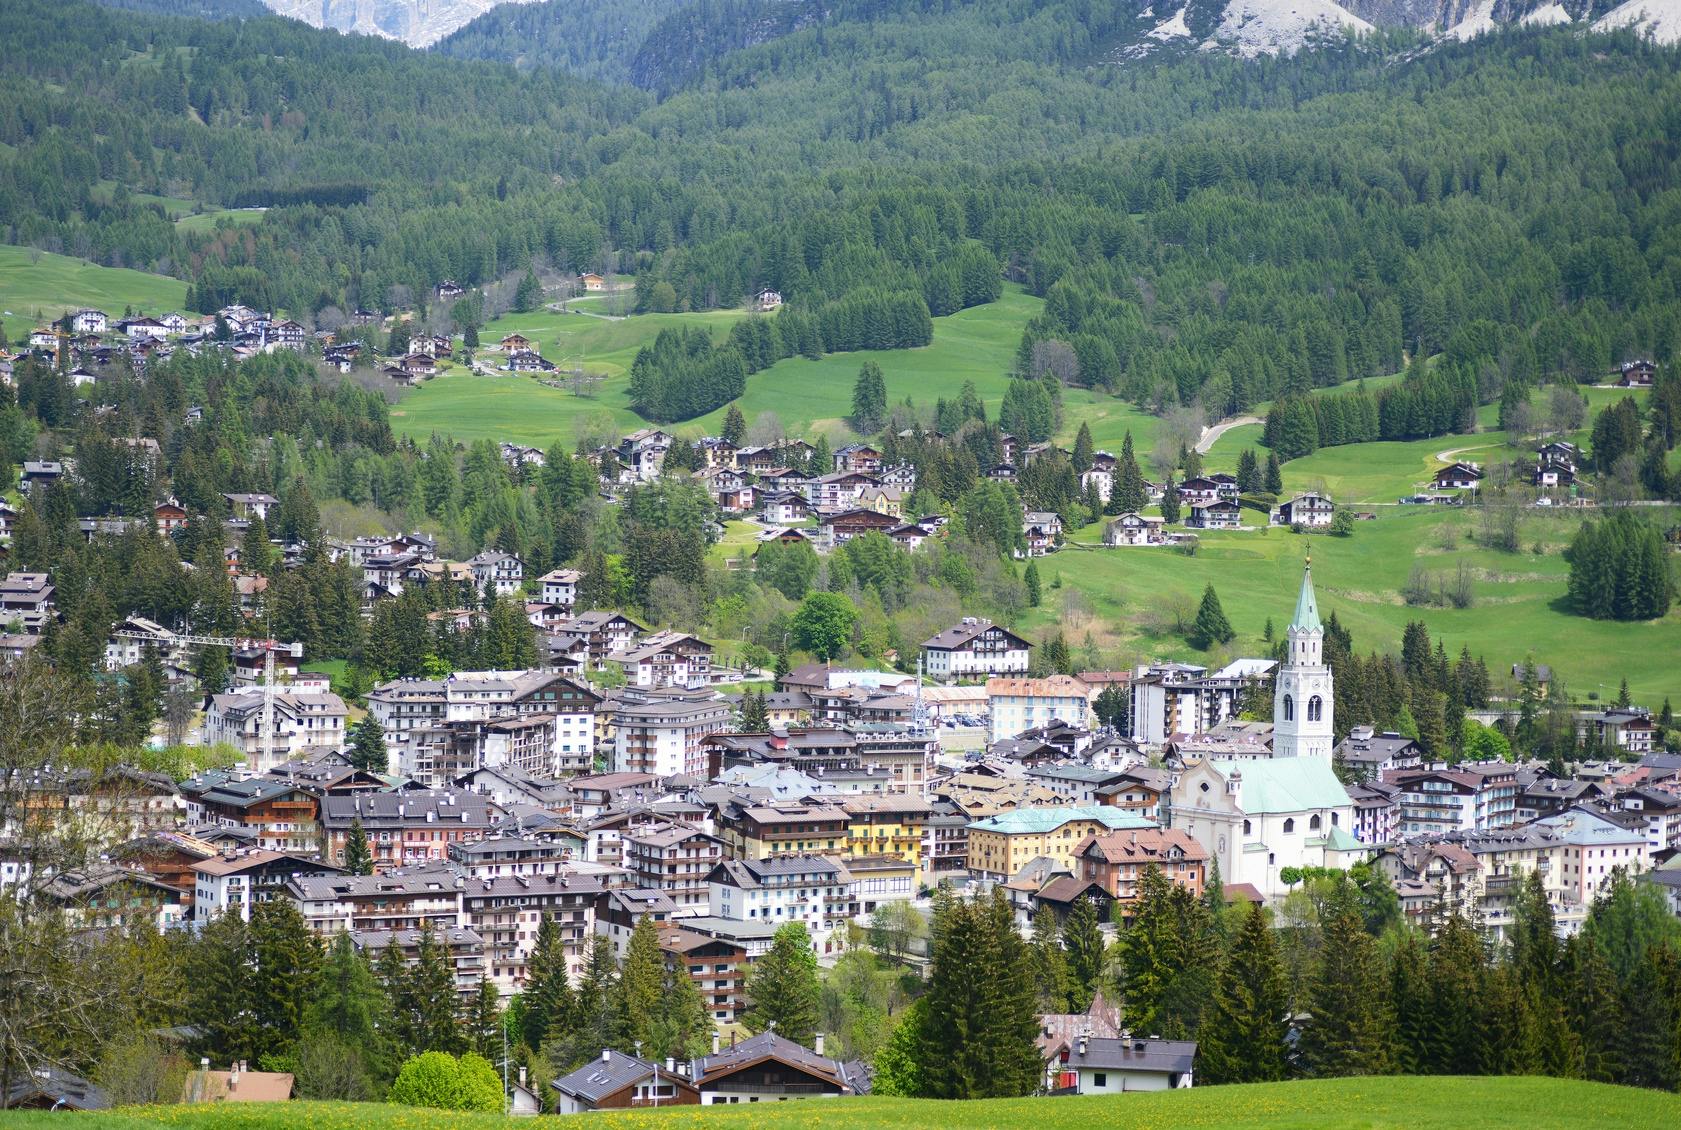 Gita di un giorno per piccoli gruppi alle Dolomiti e Cortina da Venezia